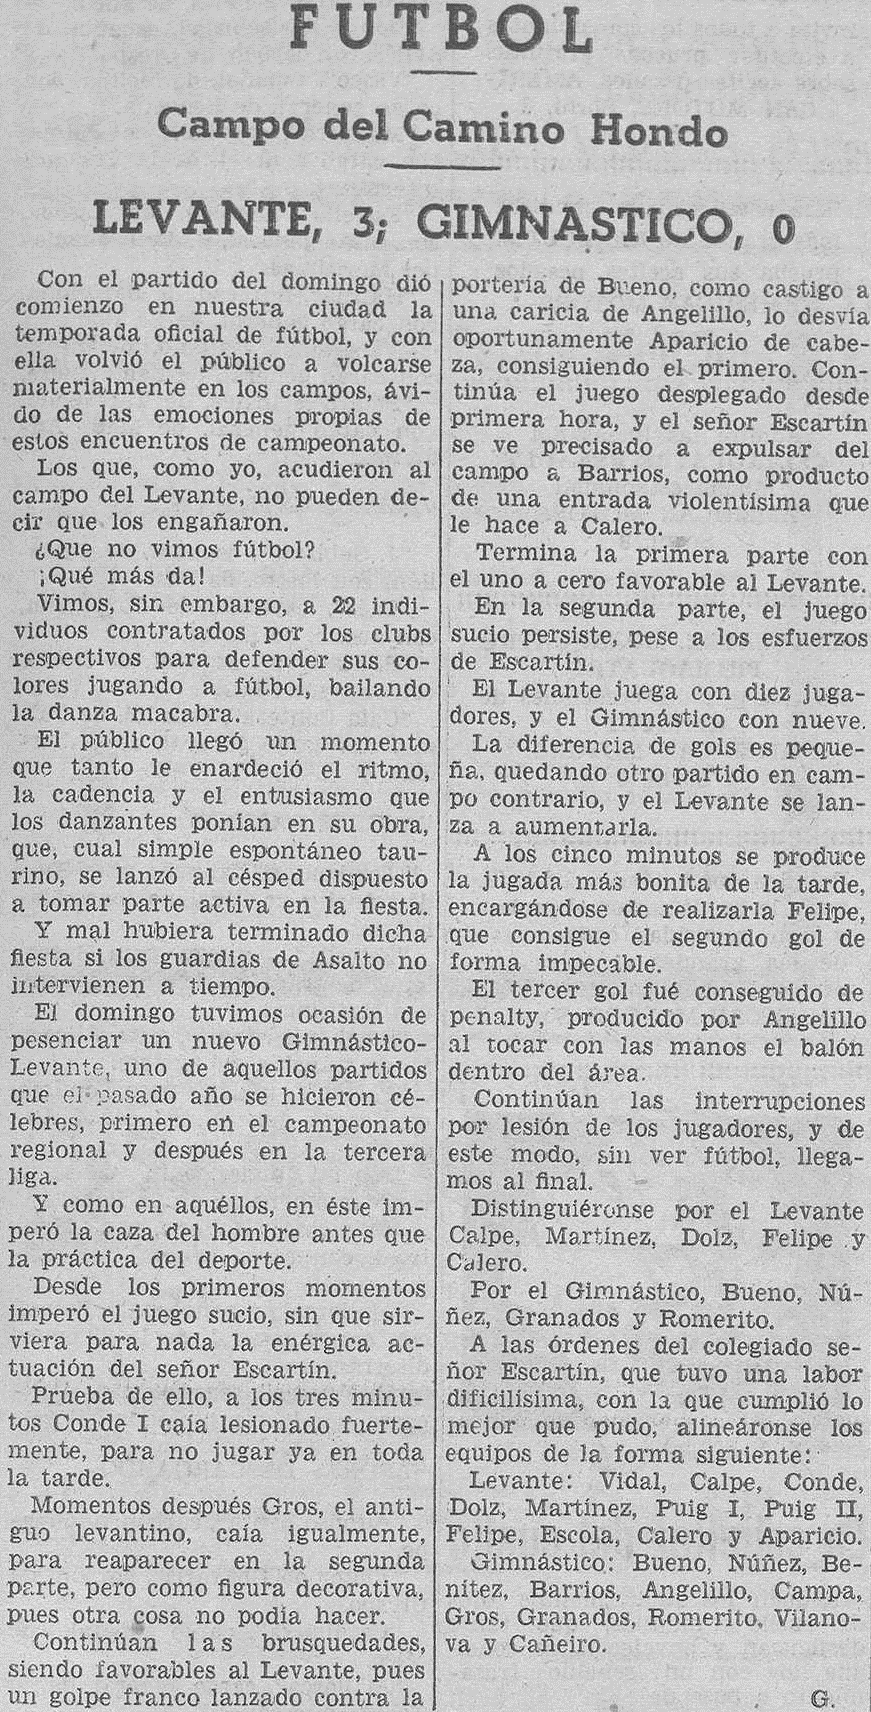 1934.09.02 (2 сентября 1934), Леванте - Гимнастико, 3-0.png